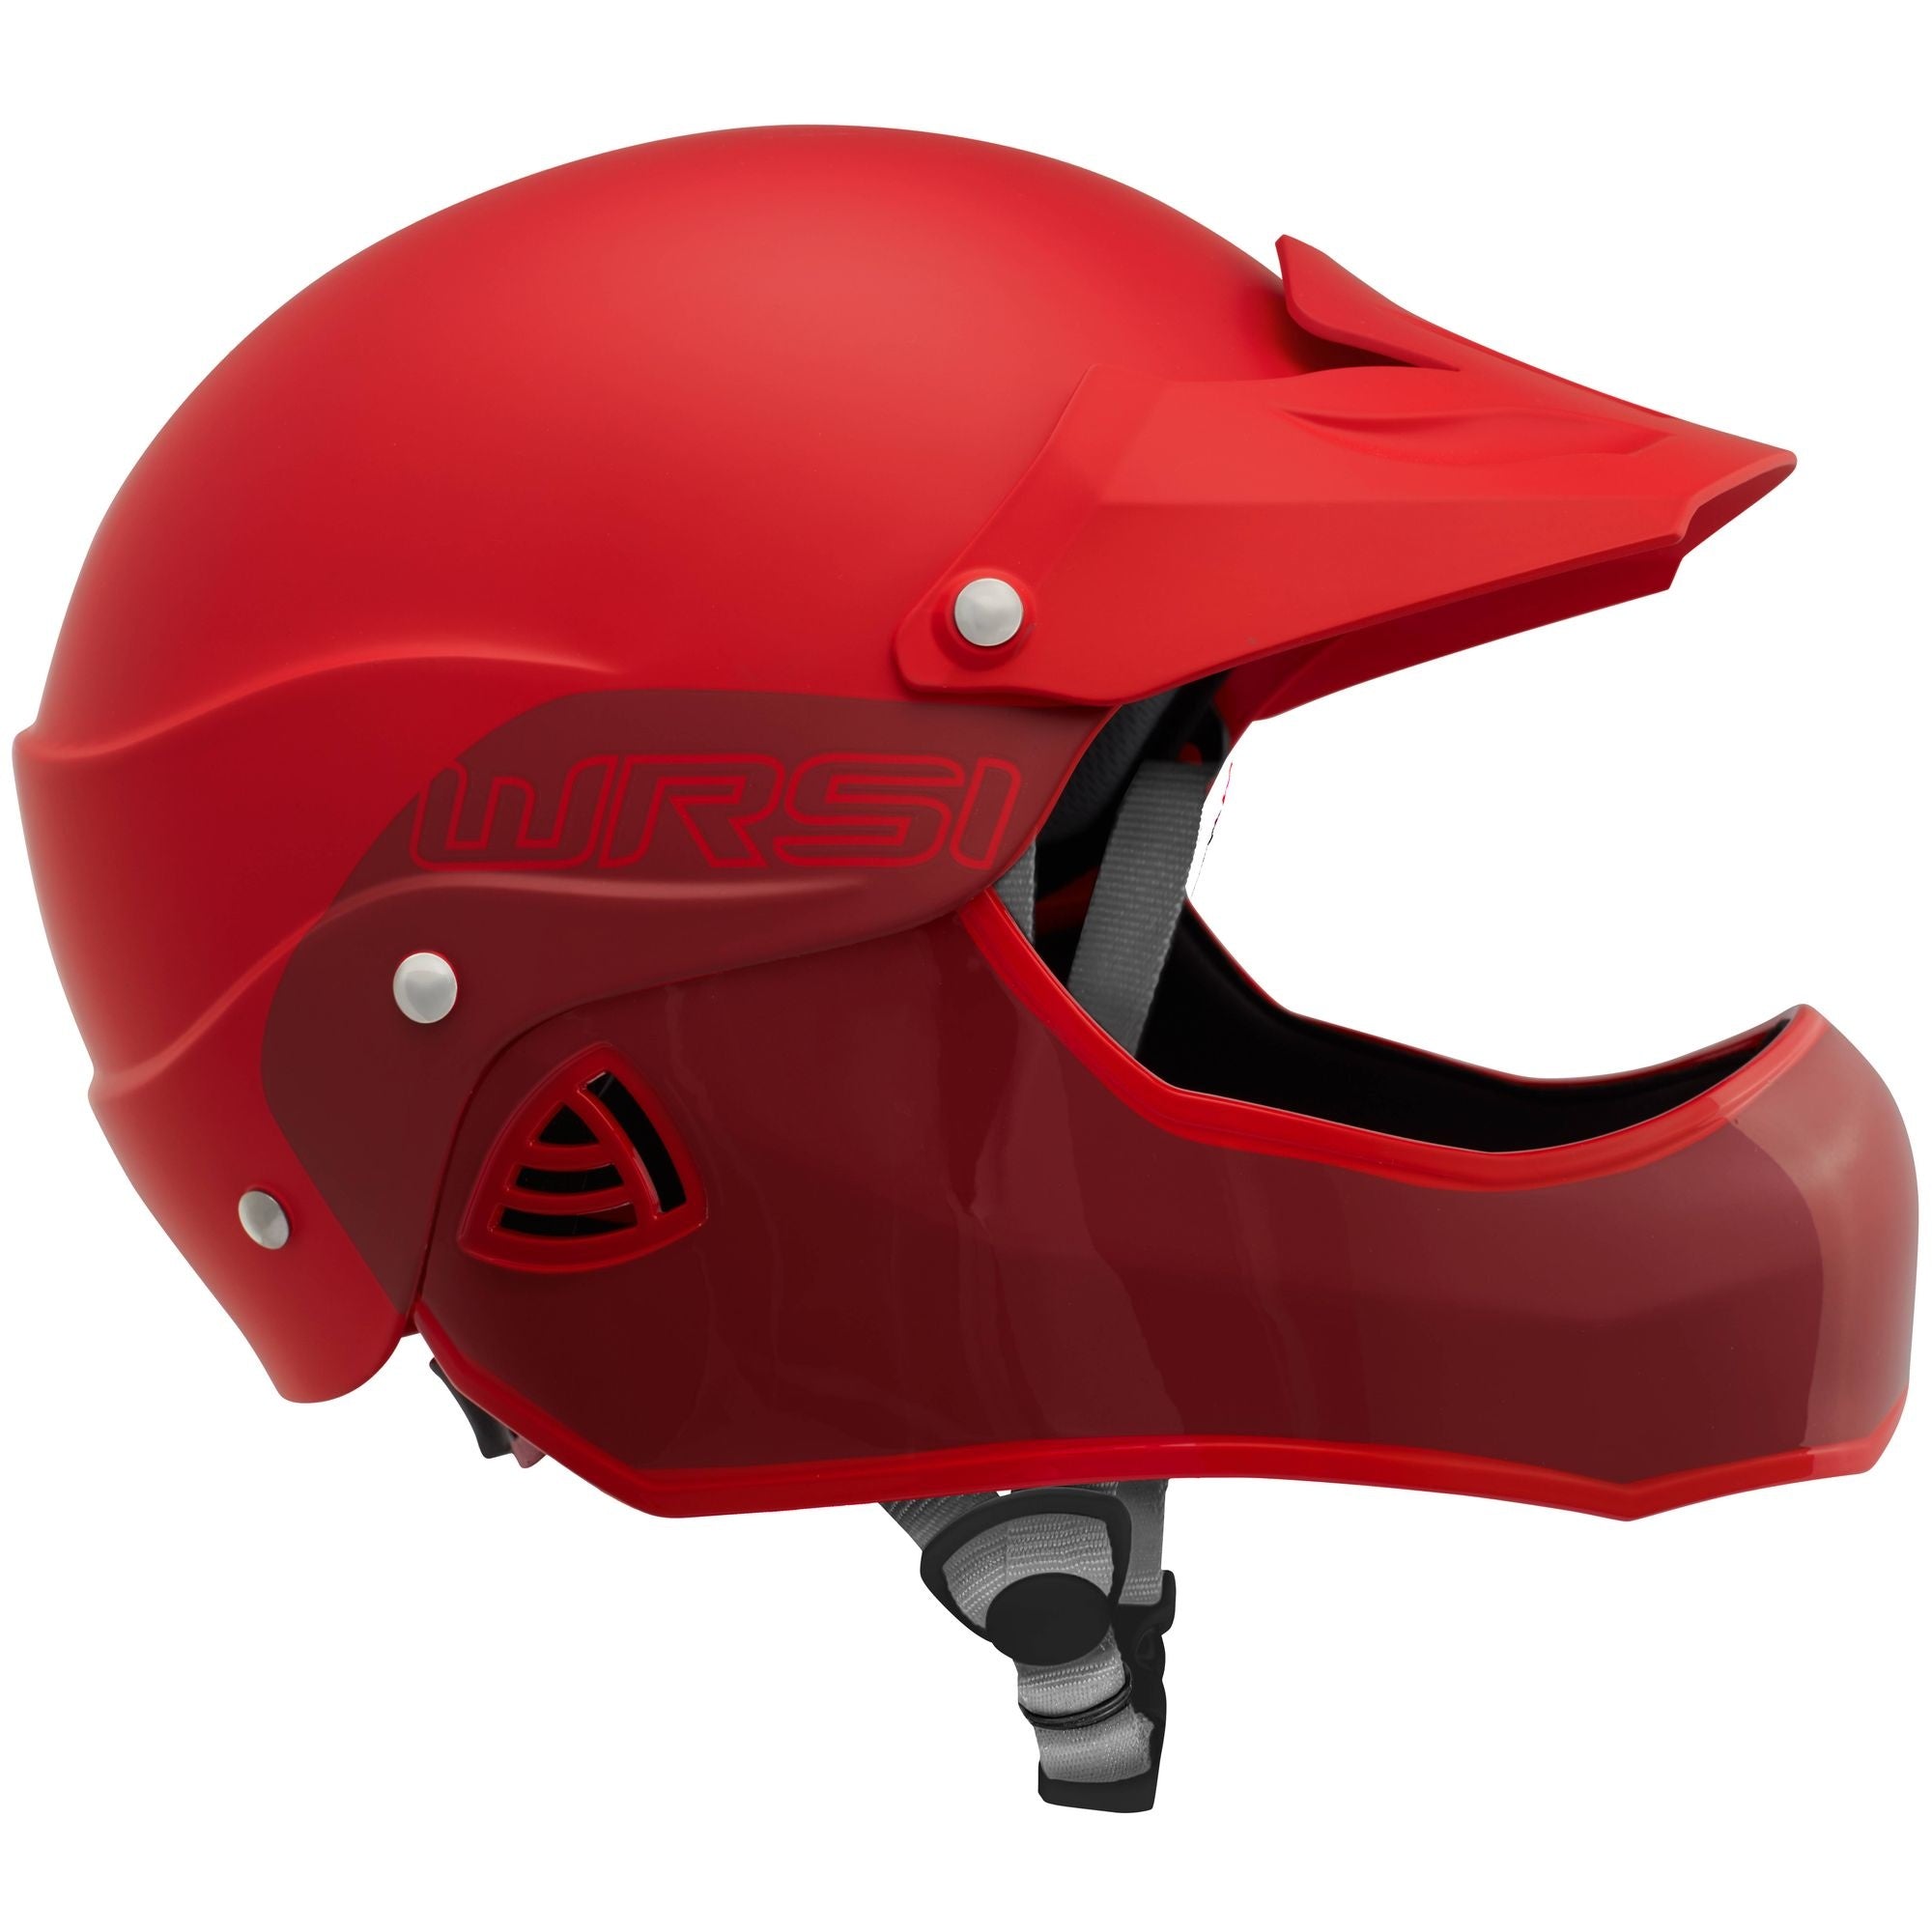 WRSI - Moment - Helmet